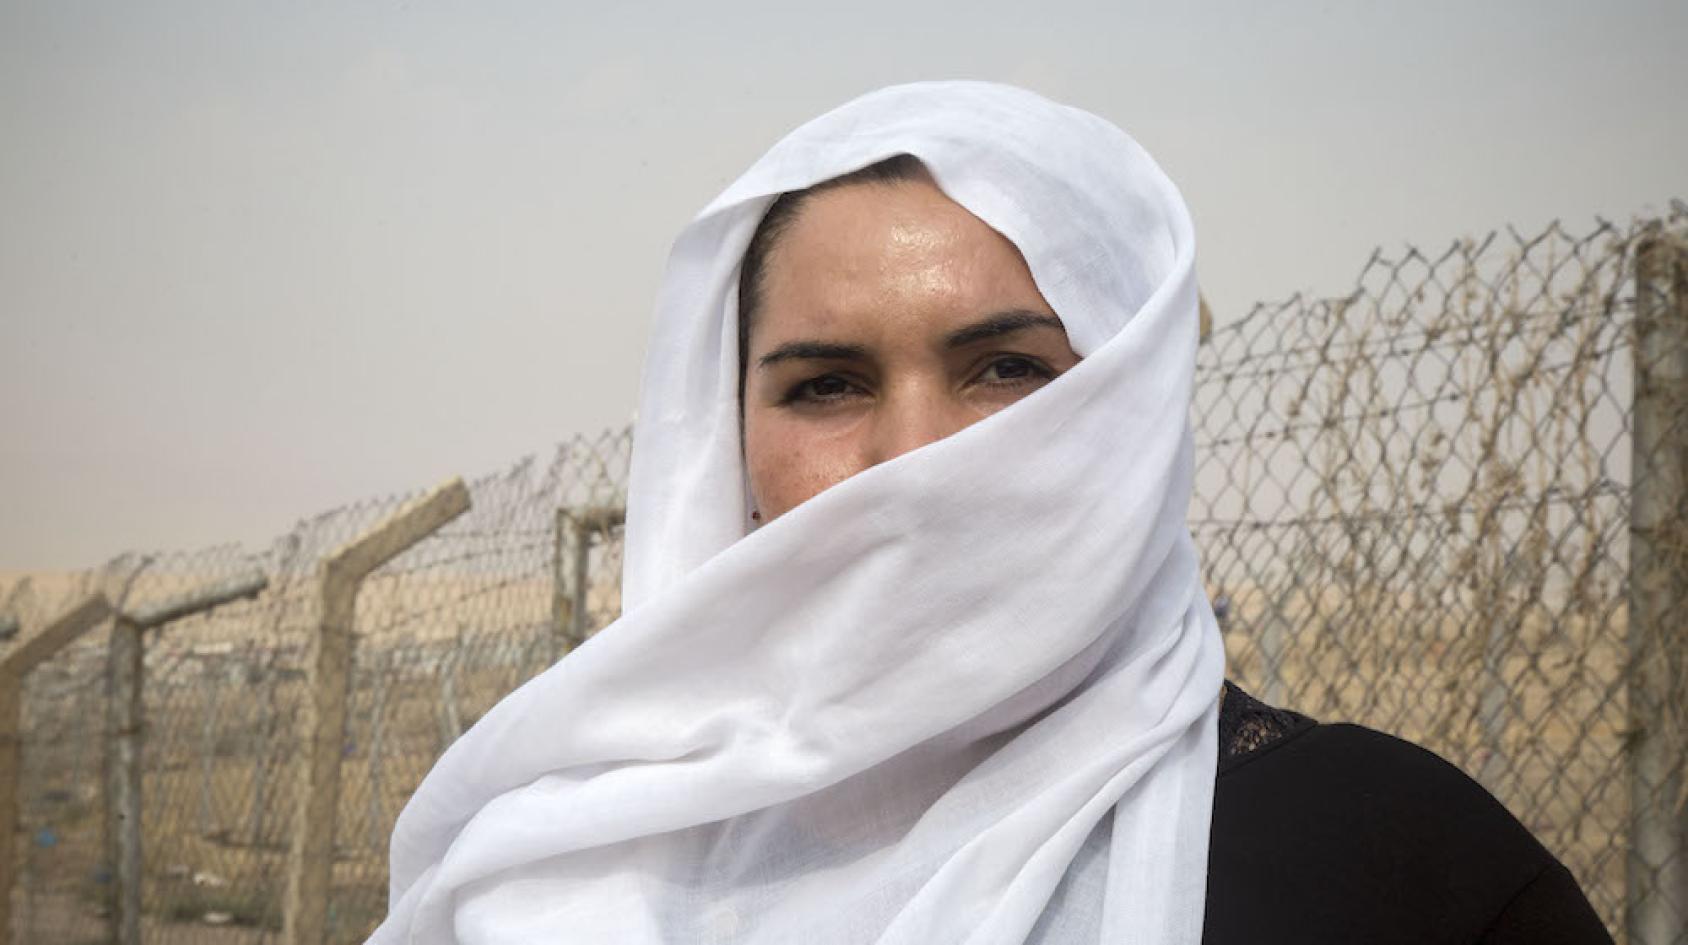 Portrait d’une femme originaire du Kurdistan iraquien portant un voile blanc pour se couvrir le visage et se tenant devant des fils de barbelé.